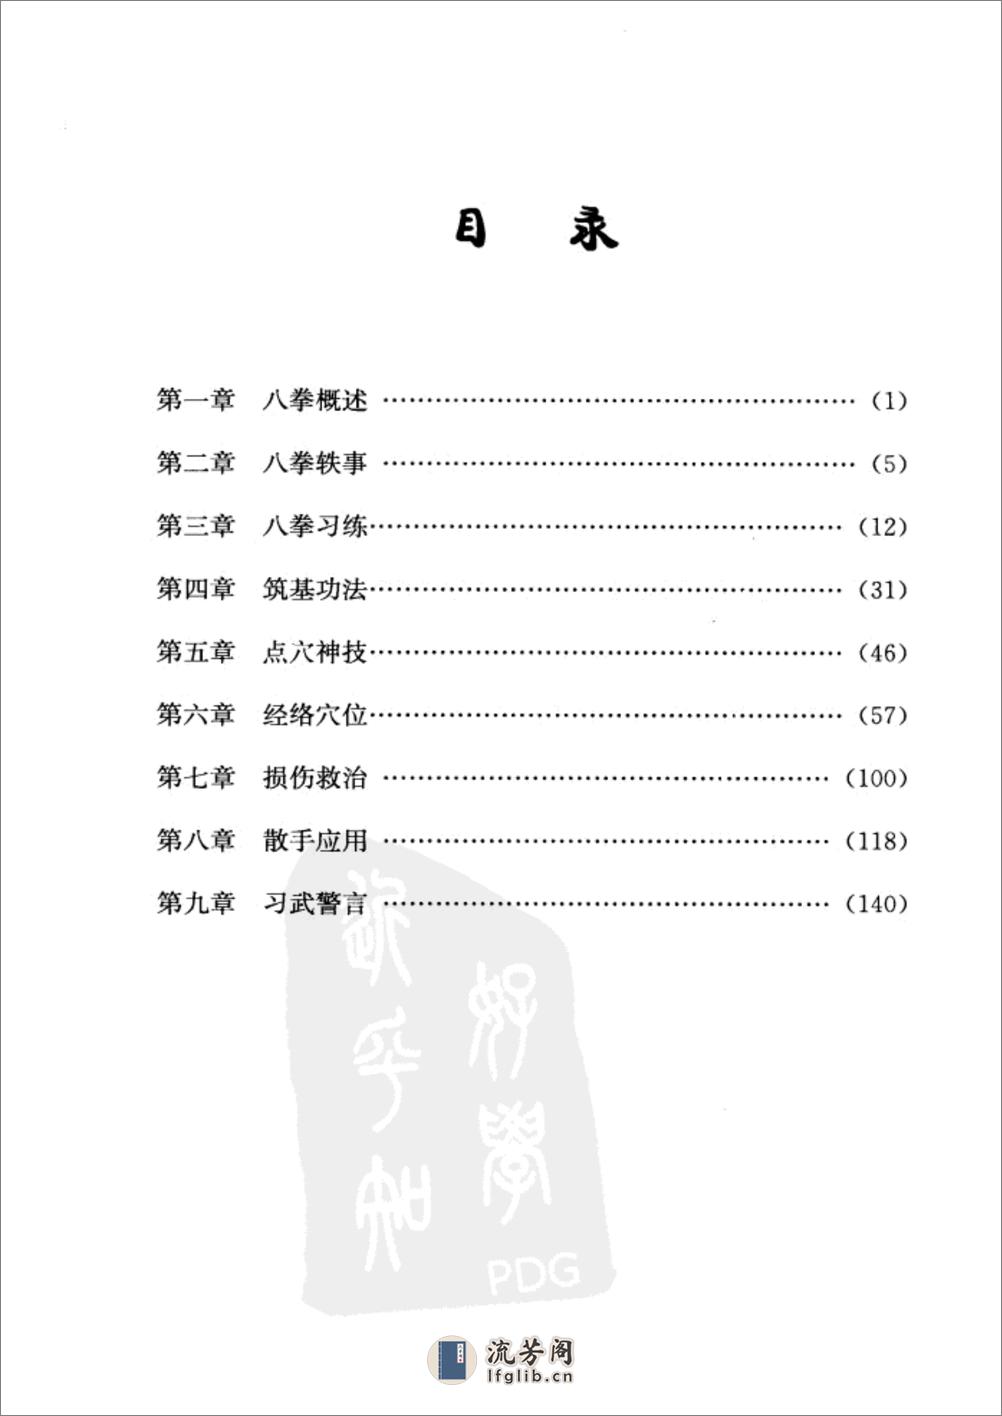 《八拳制敌绝技》羊定国、陈钟华 - 第12页预览图